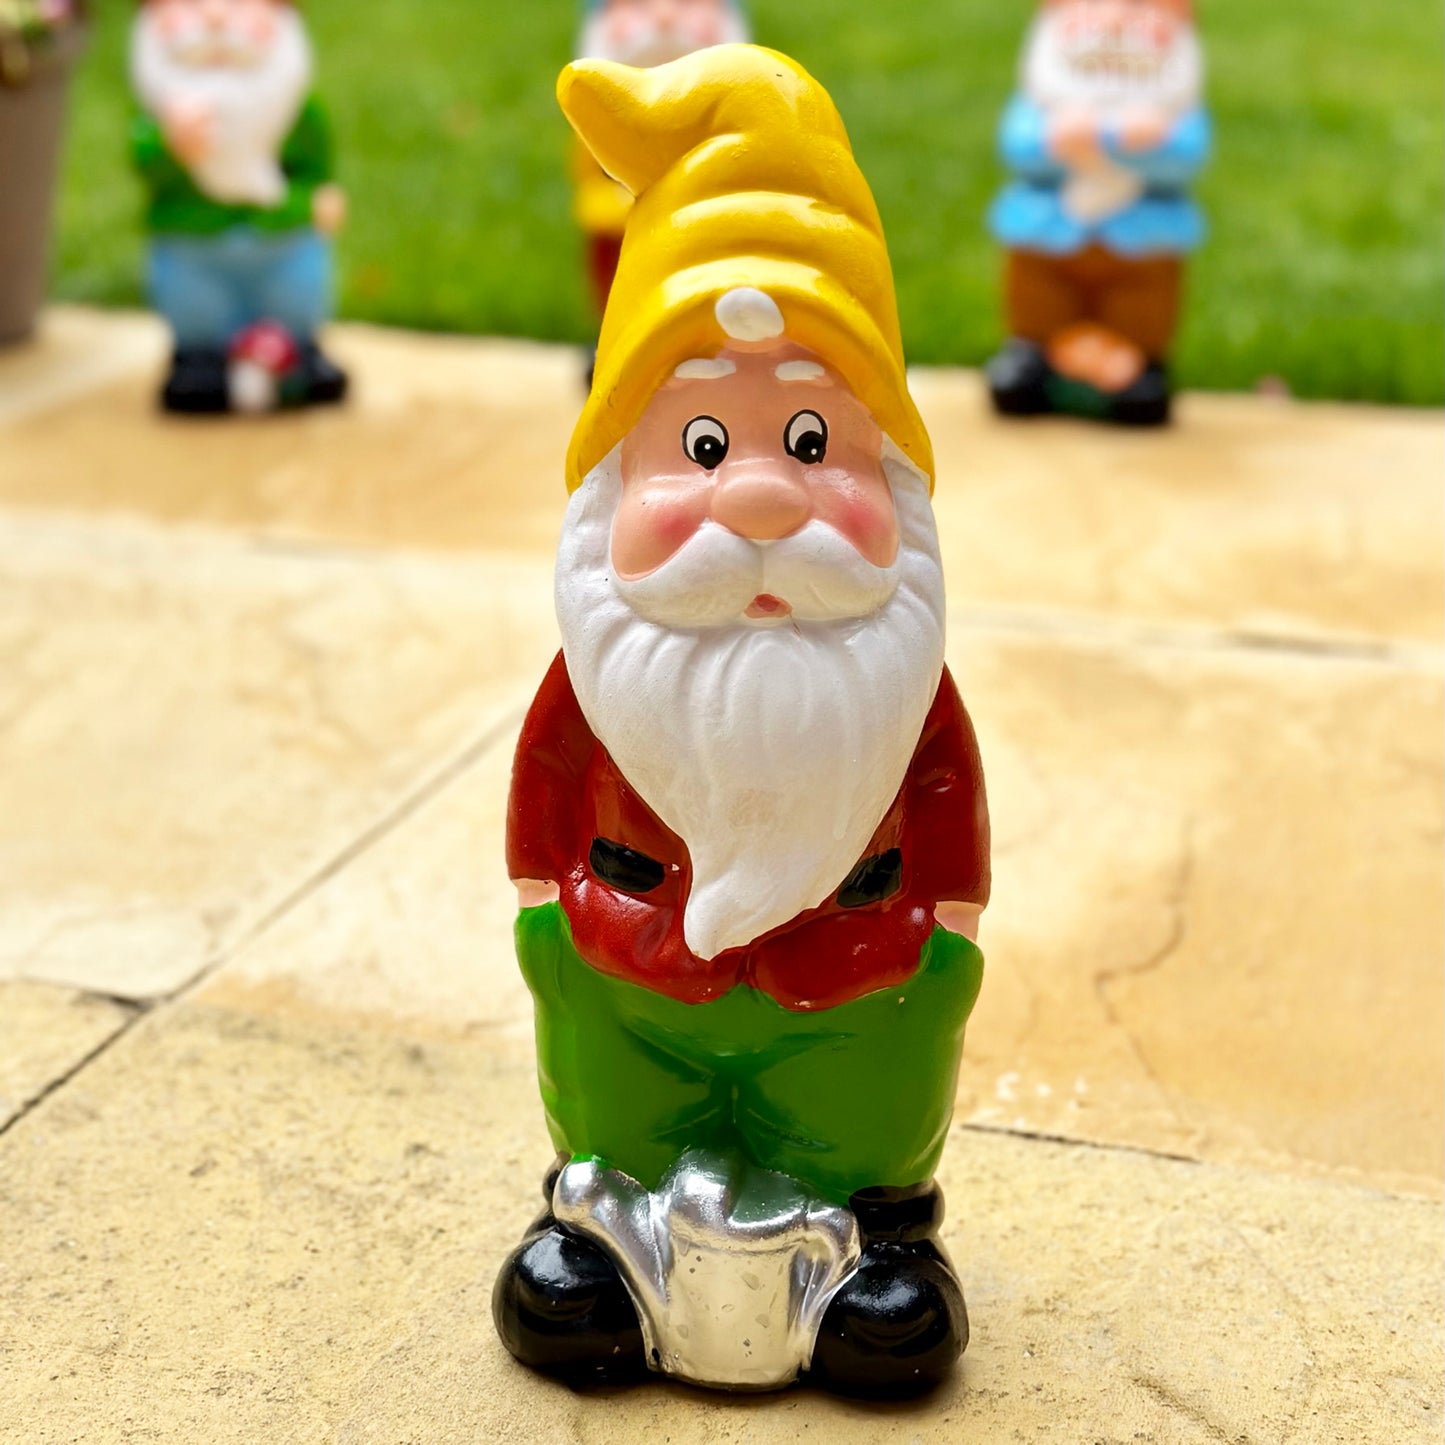 30cm Garden Gnome Ornaments